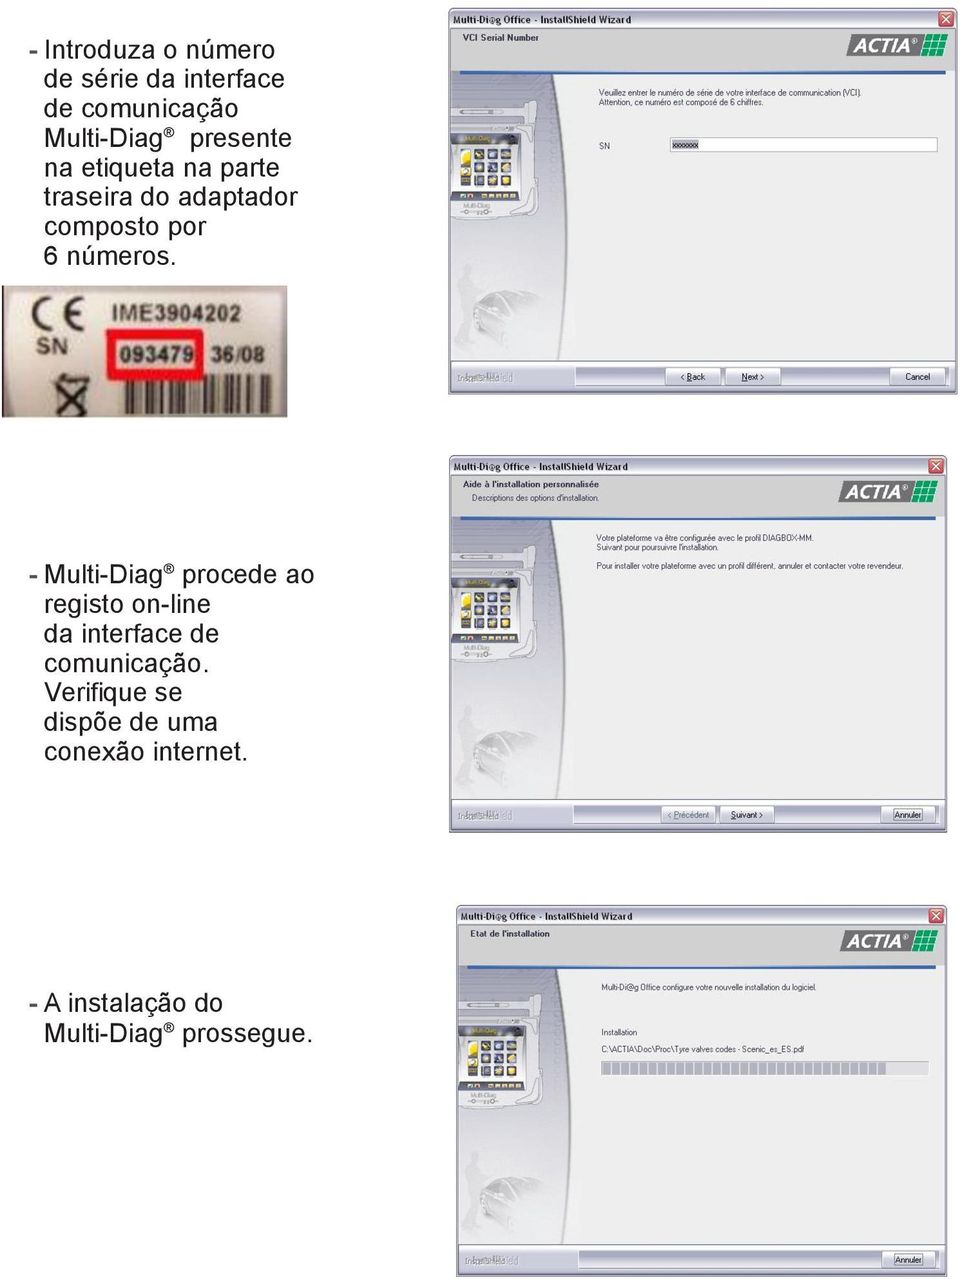 - Multi-Diag procede ao registo on-line da interface de comunicação.